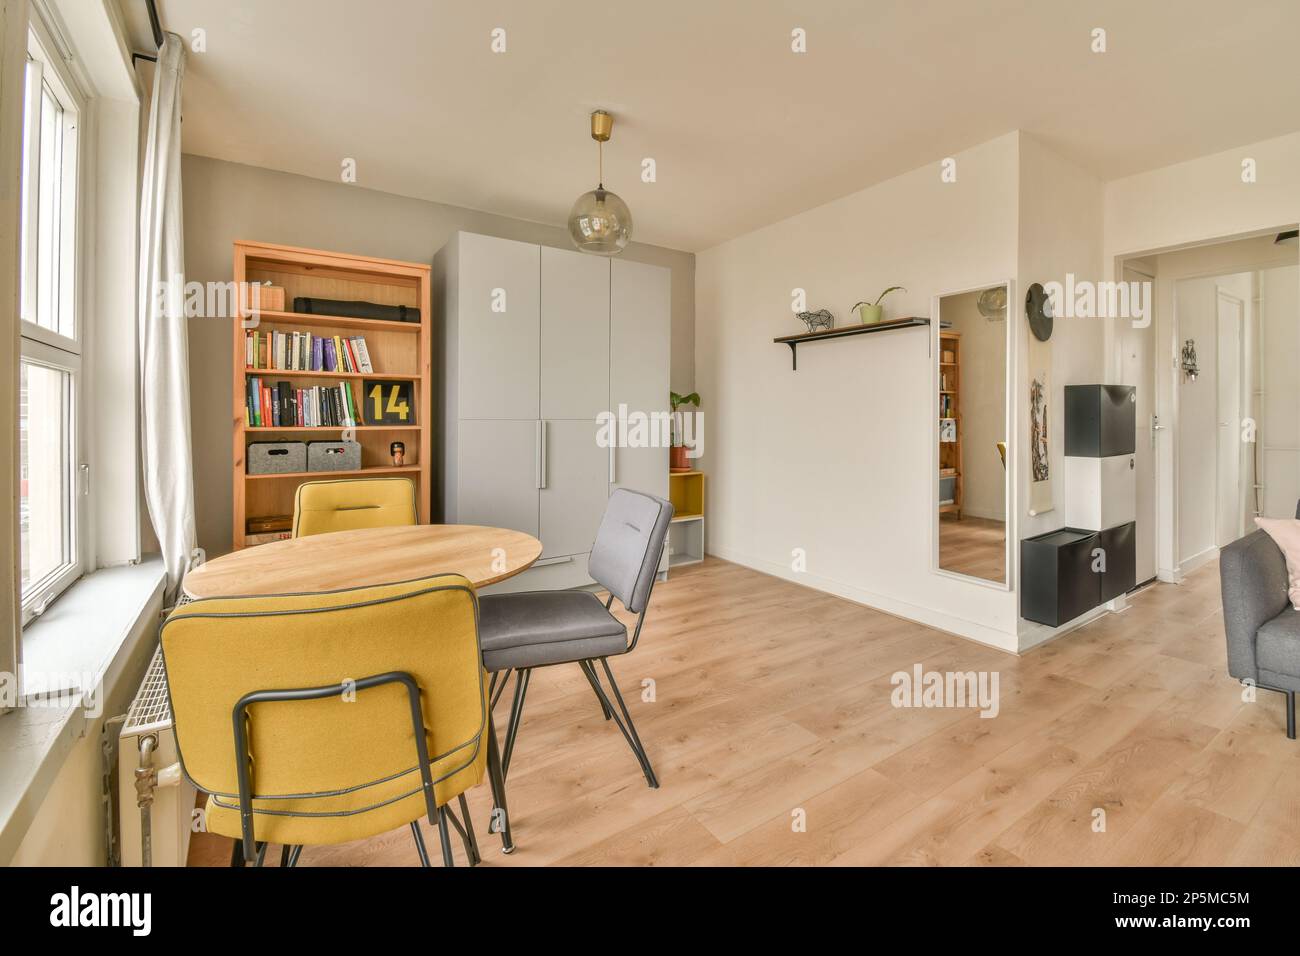 Ein Wohnzimmer mit Holzfußboden und weißen Wänden, es gibt einen gelben Stuhl vor dem Tisch Stockfoto